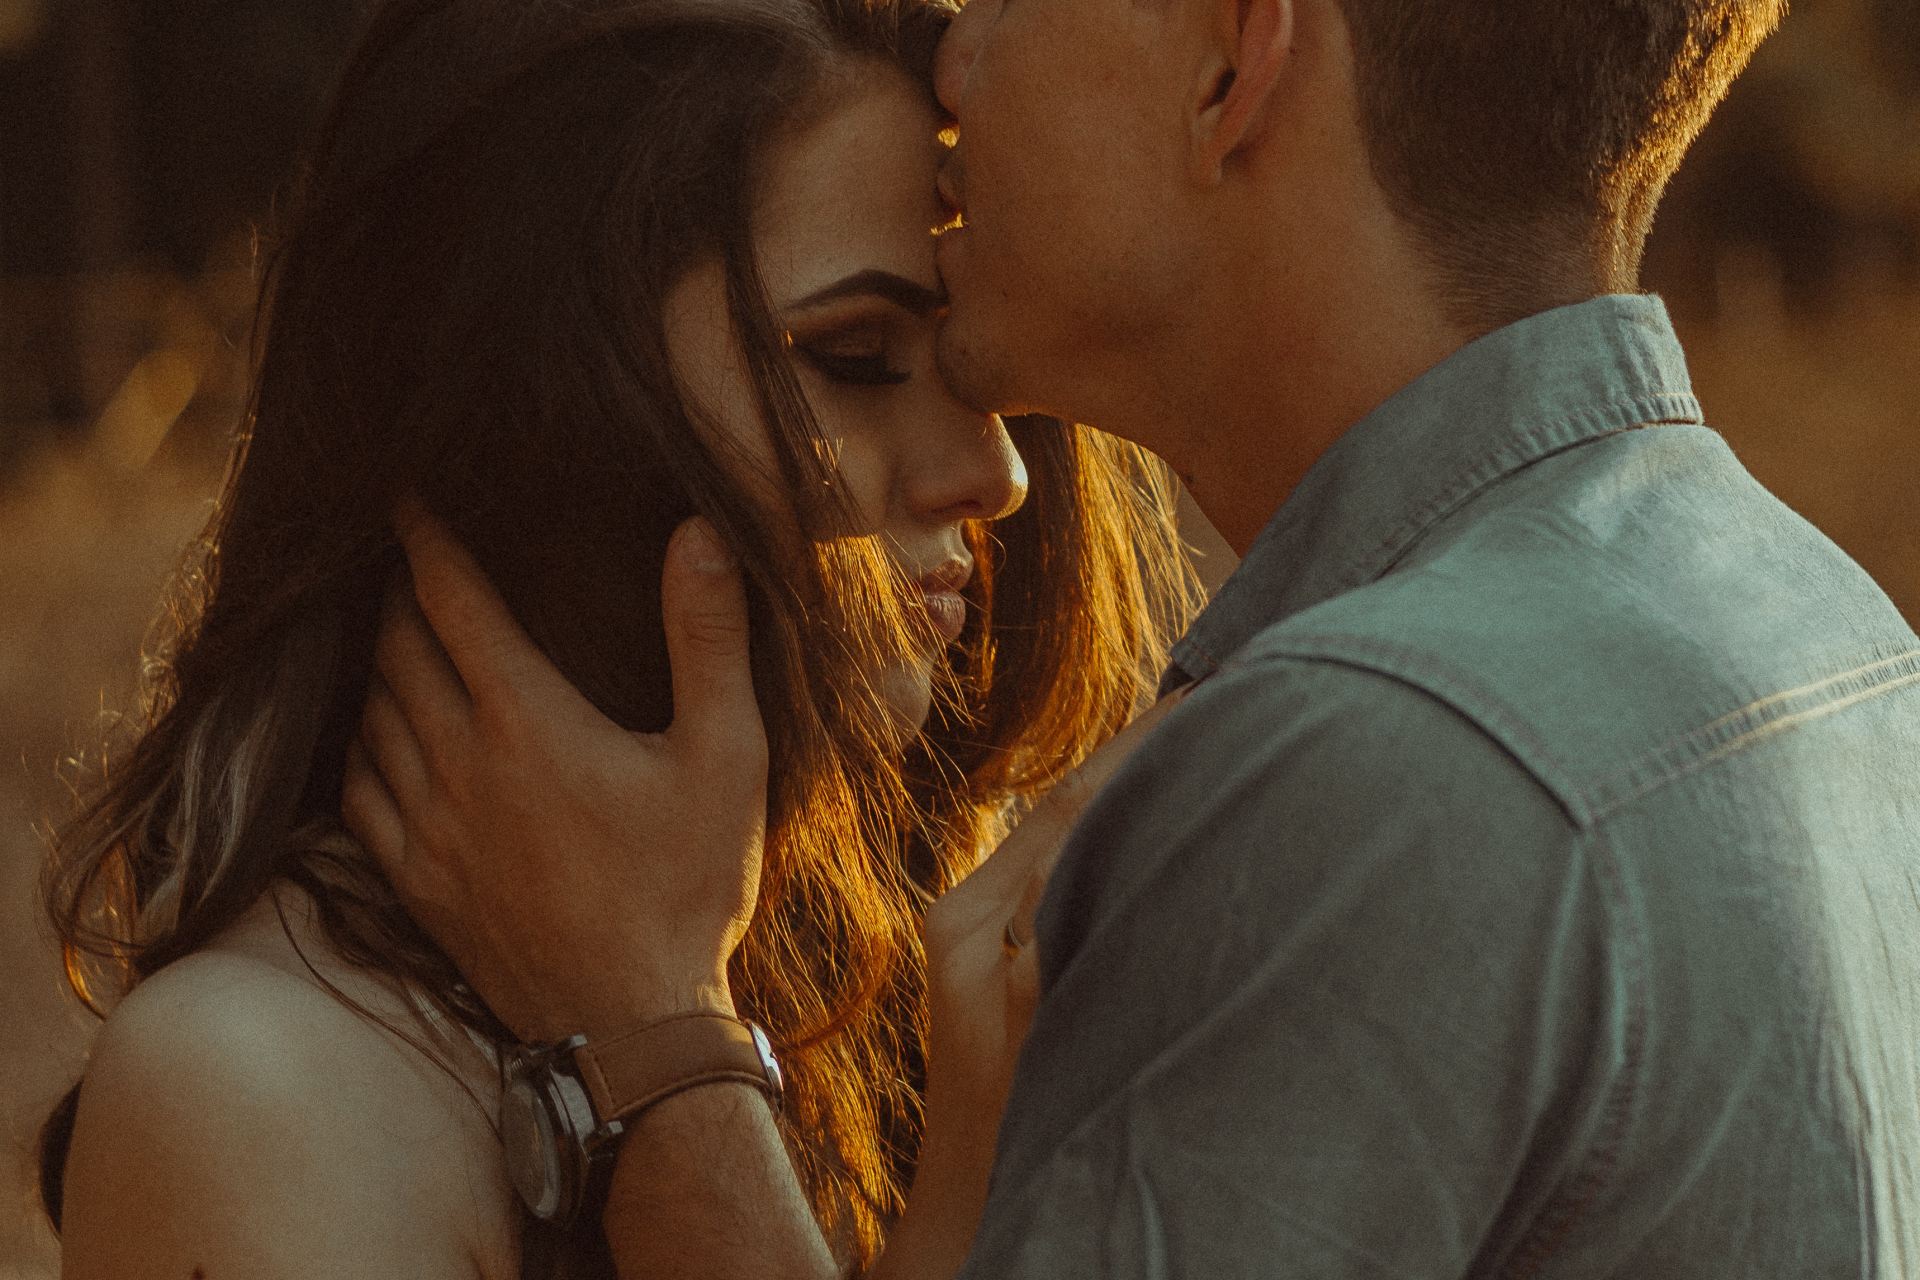 man kissing woman forehead